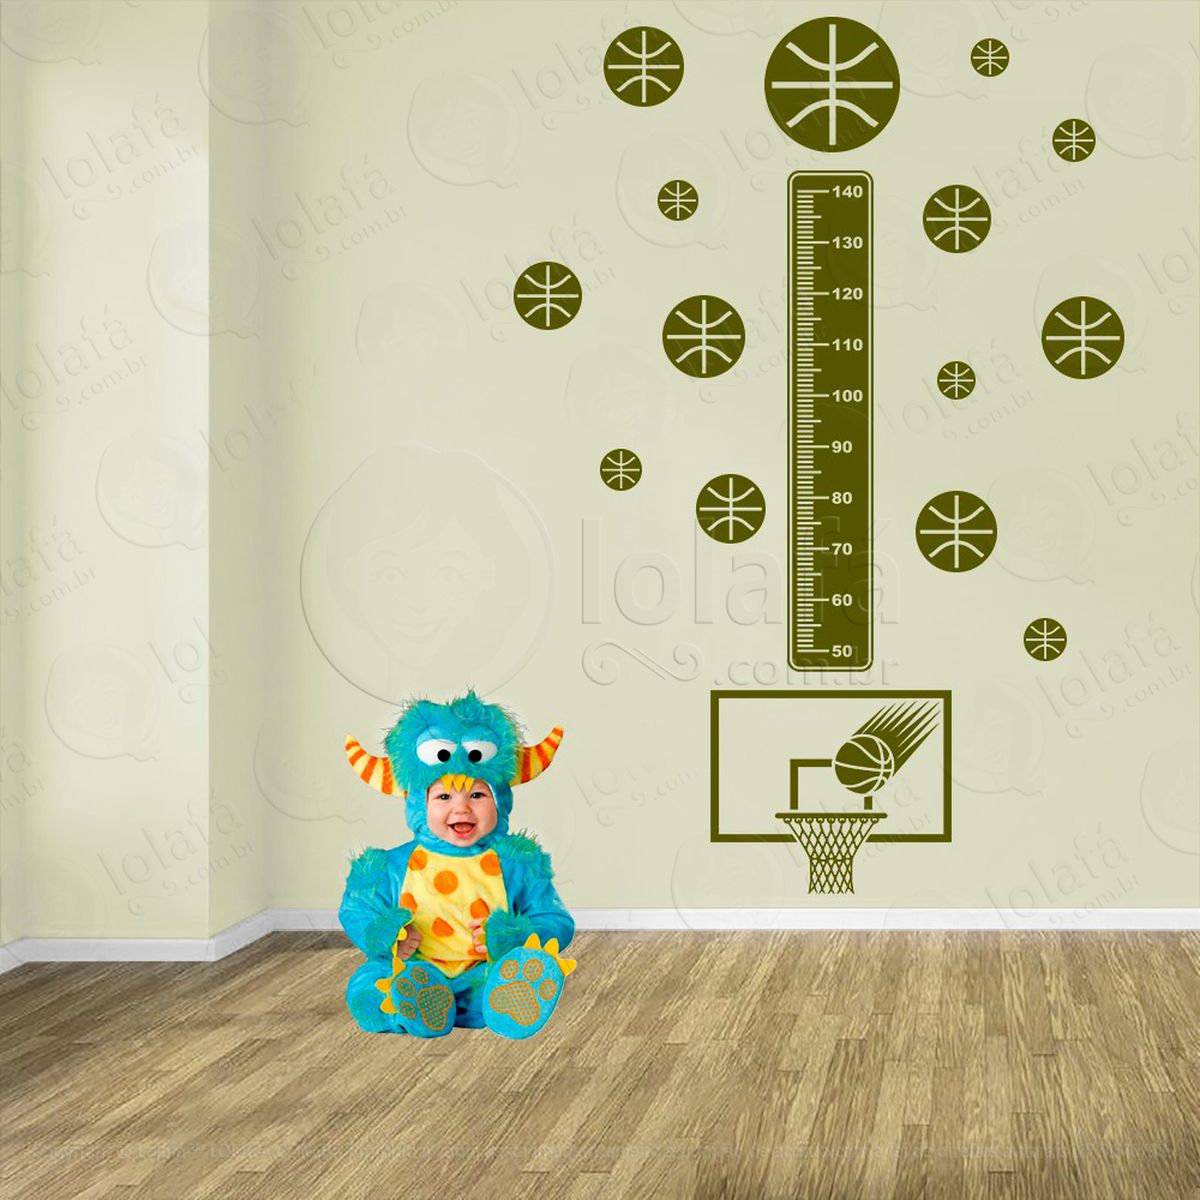 basquetebol e bolas de basquete adesivo régua de crescimento infantil, medidor de altura para quarto, porta e parede - mod:279